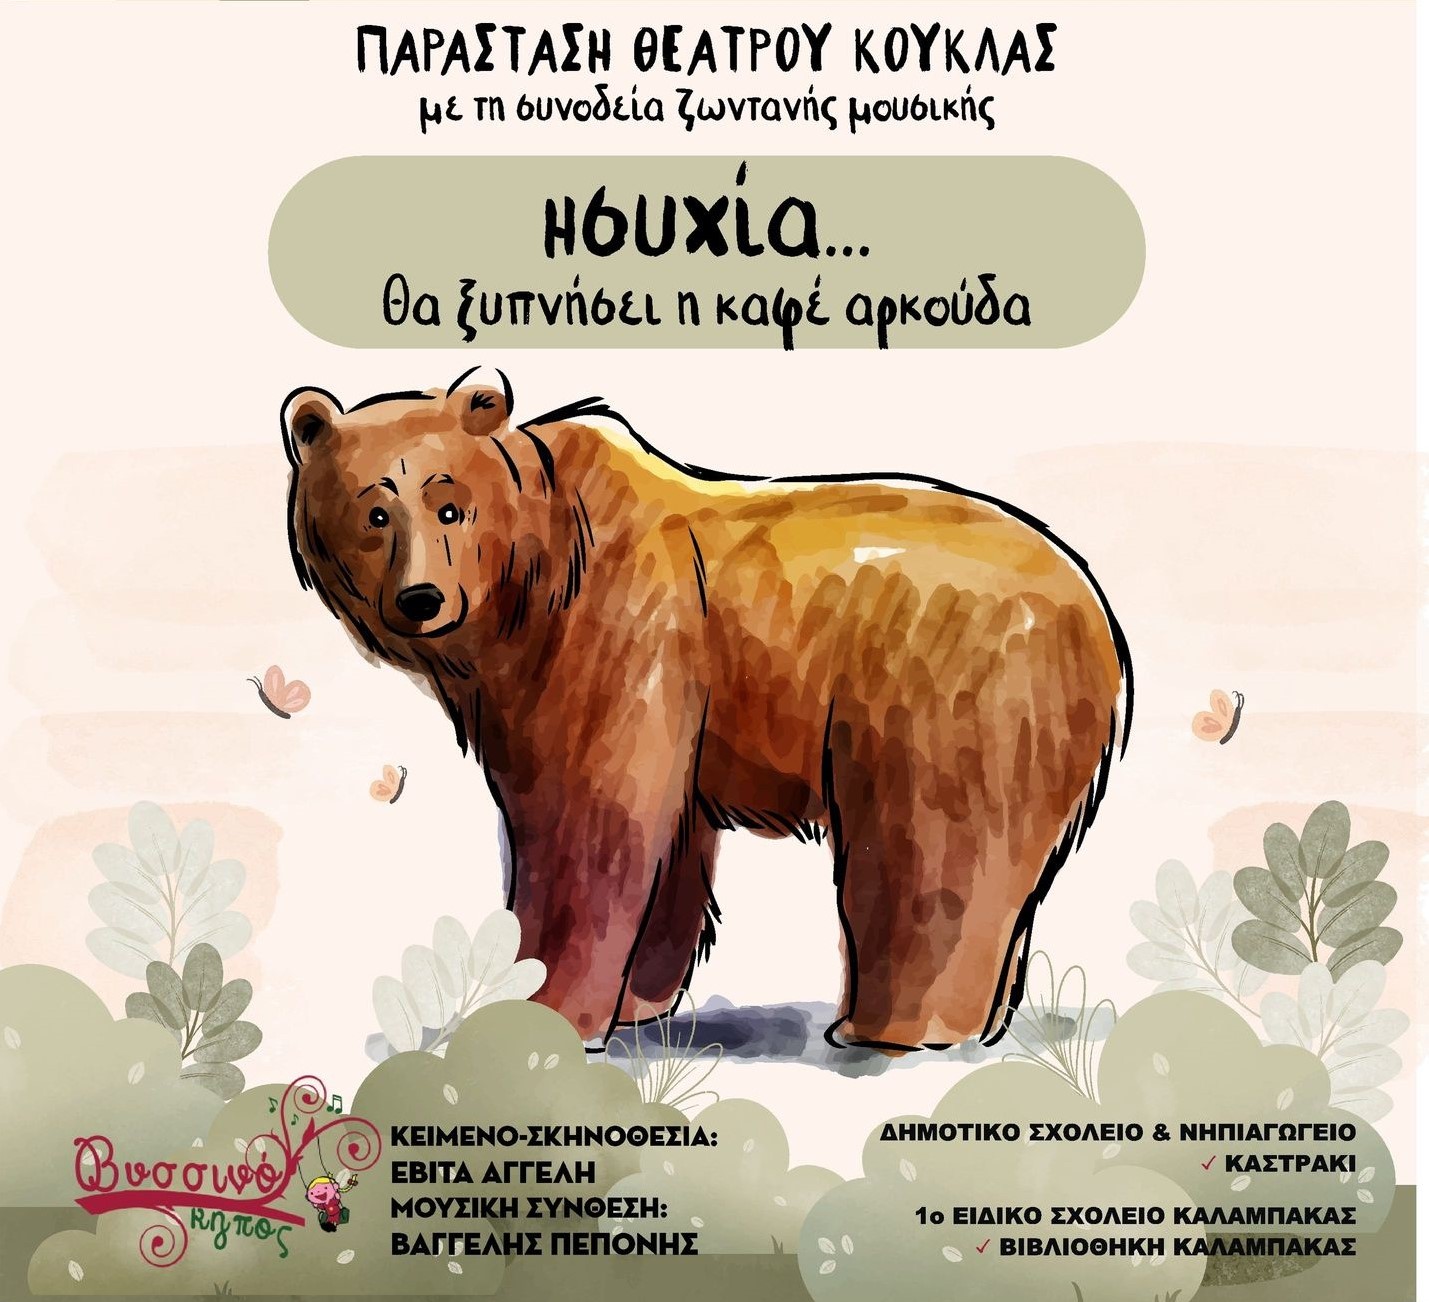 Εκπαιδευτική Δράση «Ησυχία… θα ξυπνήσει η καφέ αρκούδα» από το Πανεπιστήμιο Θεσσαλίας